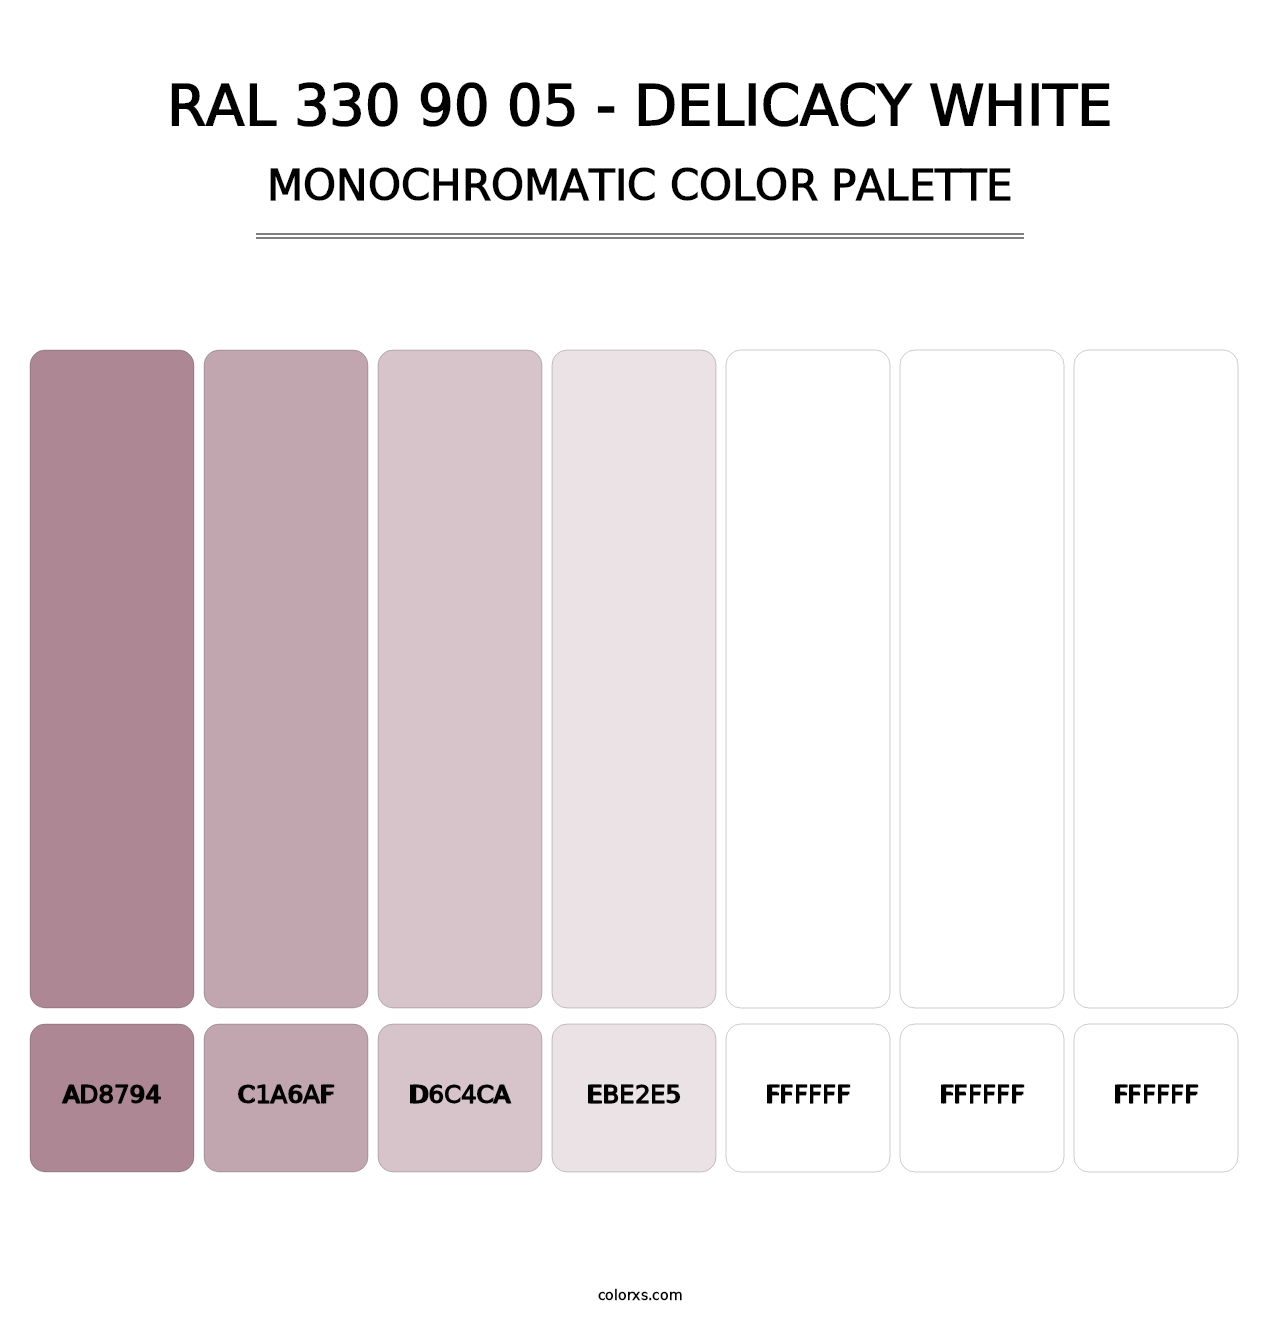 RAL 330 90 05 - Delicacy White - Monochromatic Color Palette